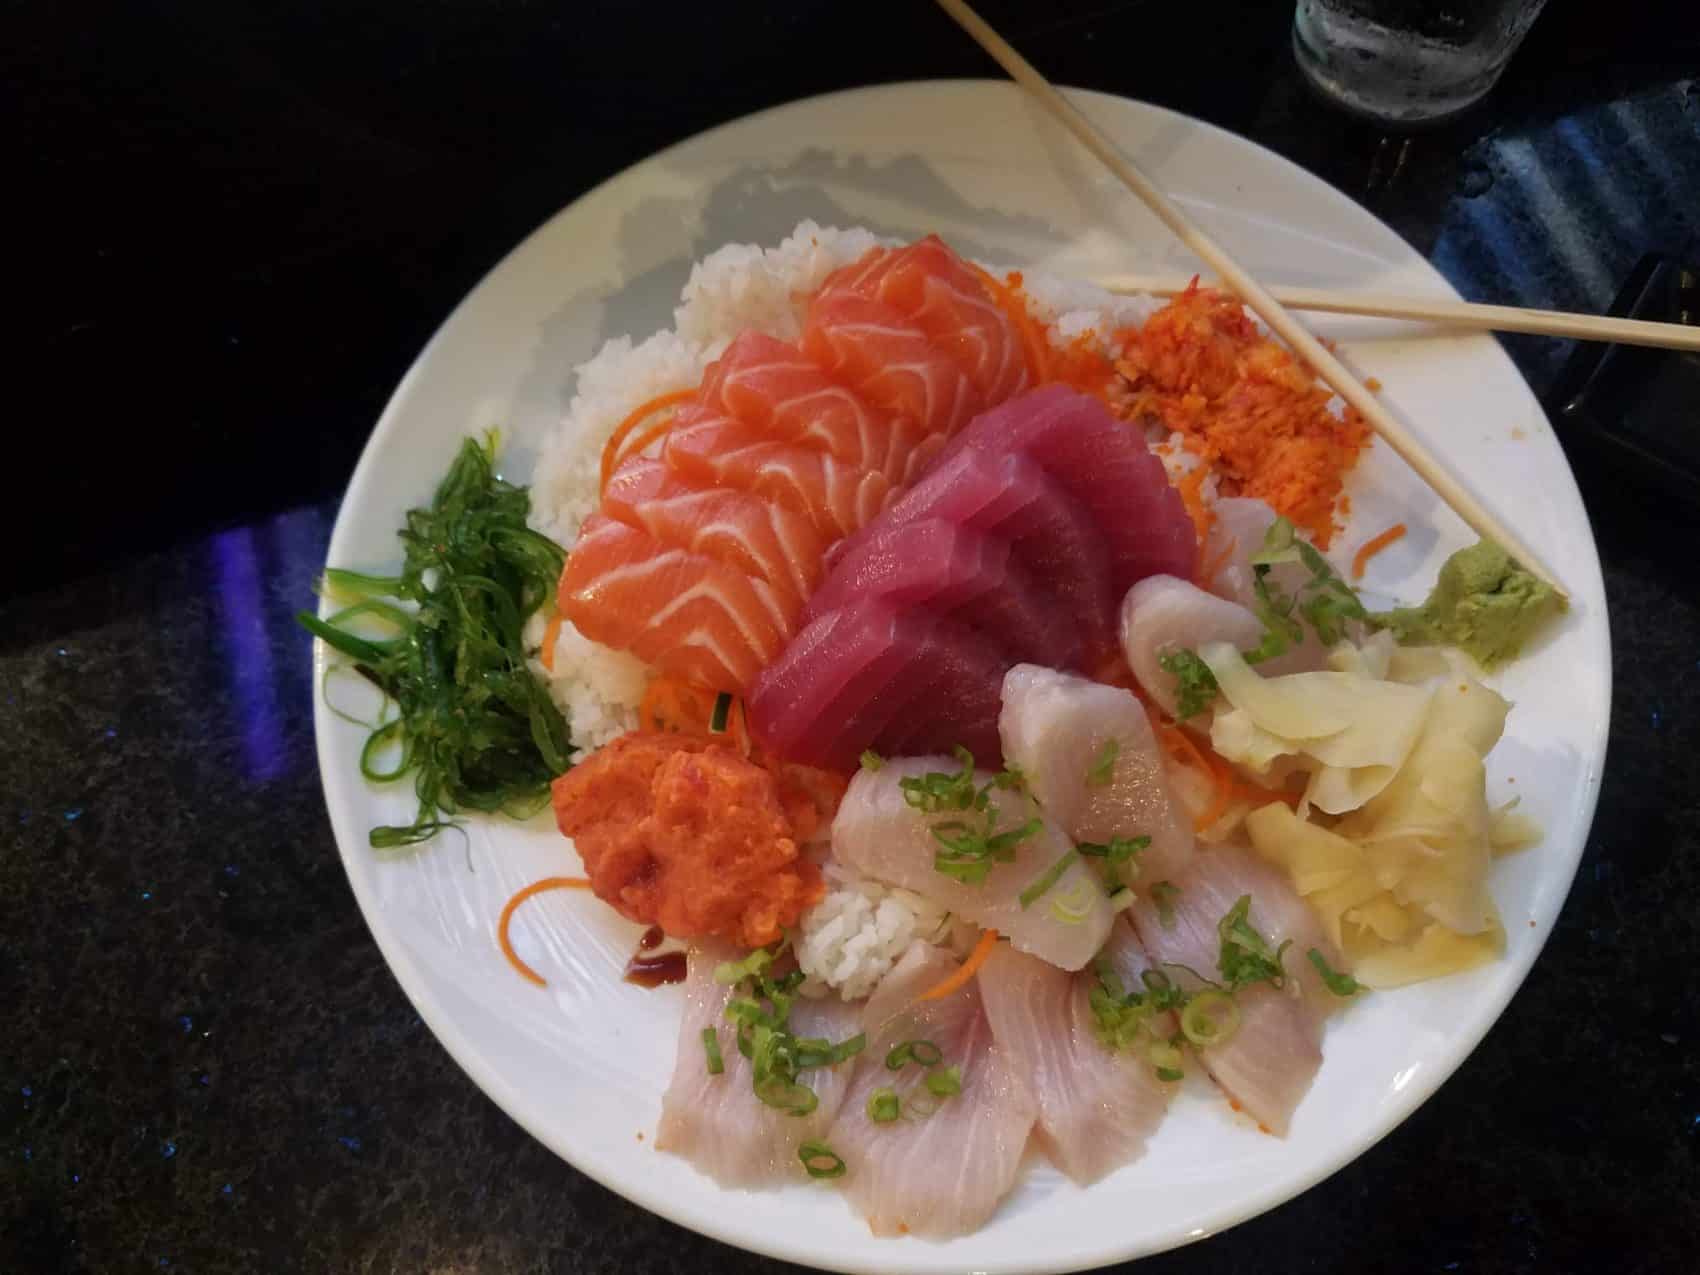 Entree - Rise Sushi - Creative Asian Cuisine